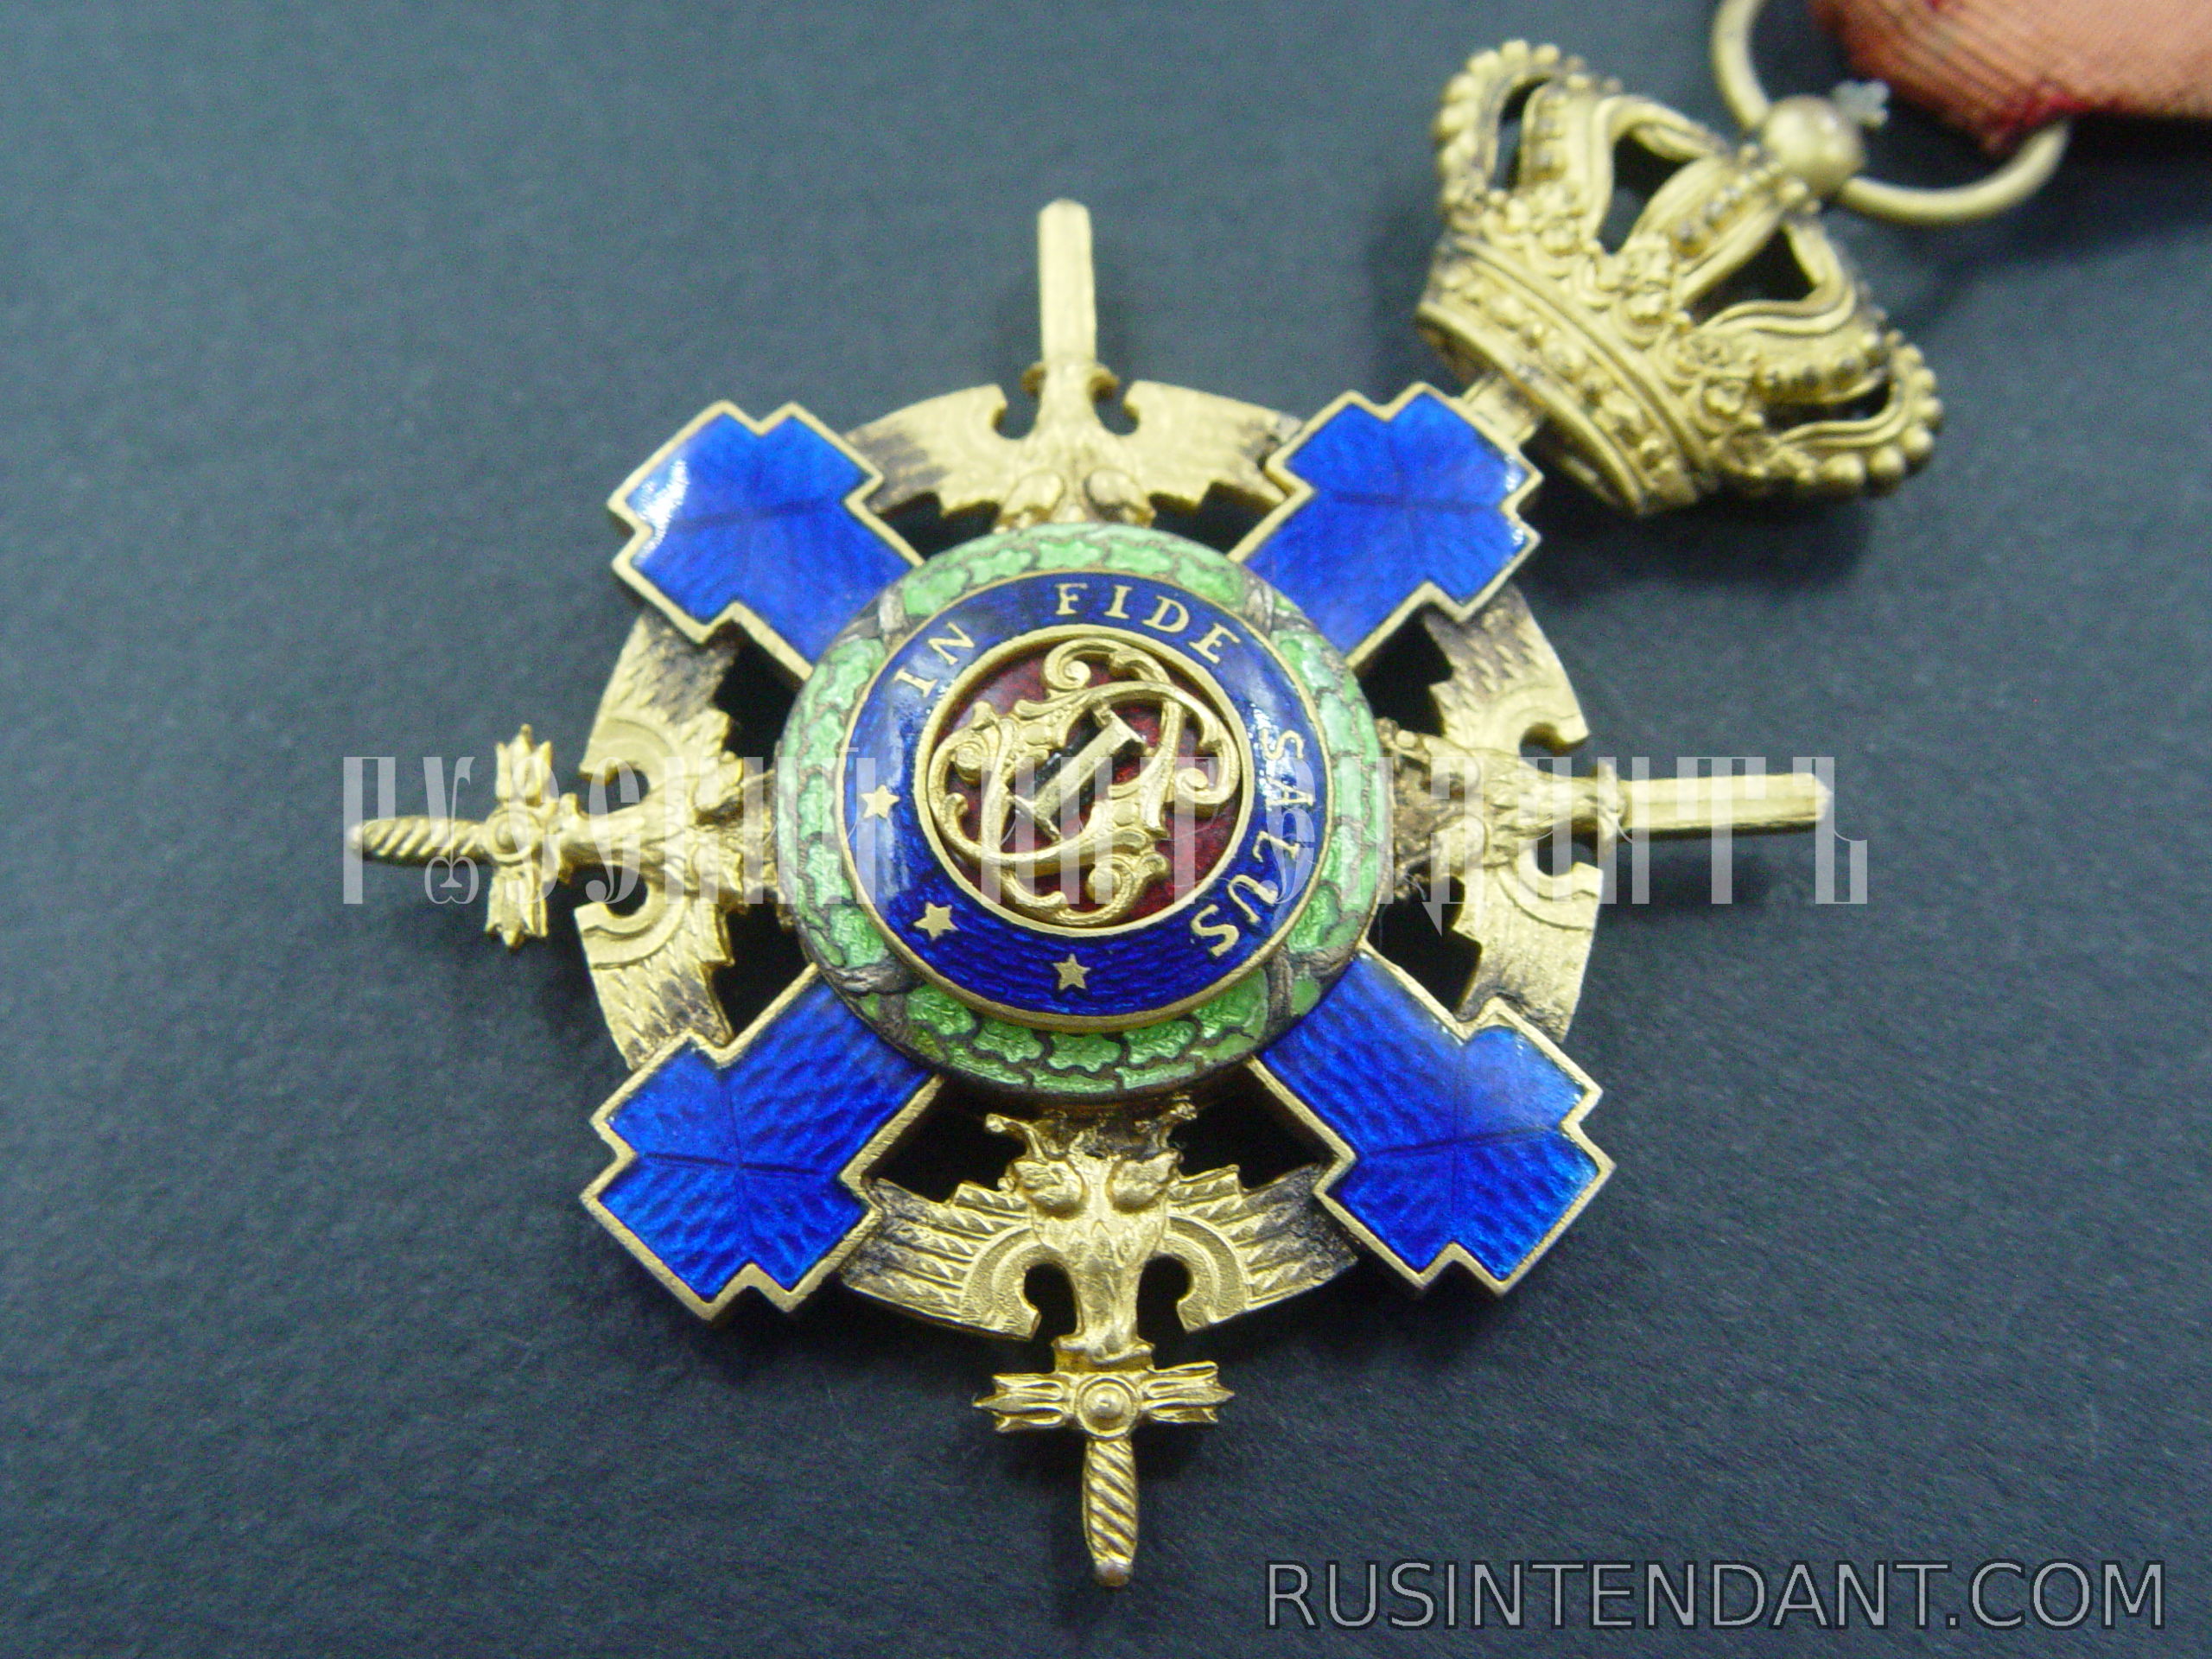 Фото 2: Орден Звезда Румынии четвертой степени с мечами на орденской ленте 